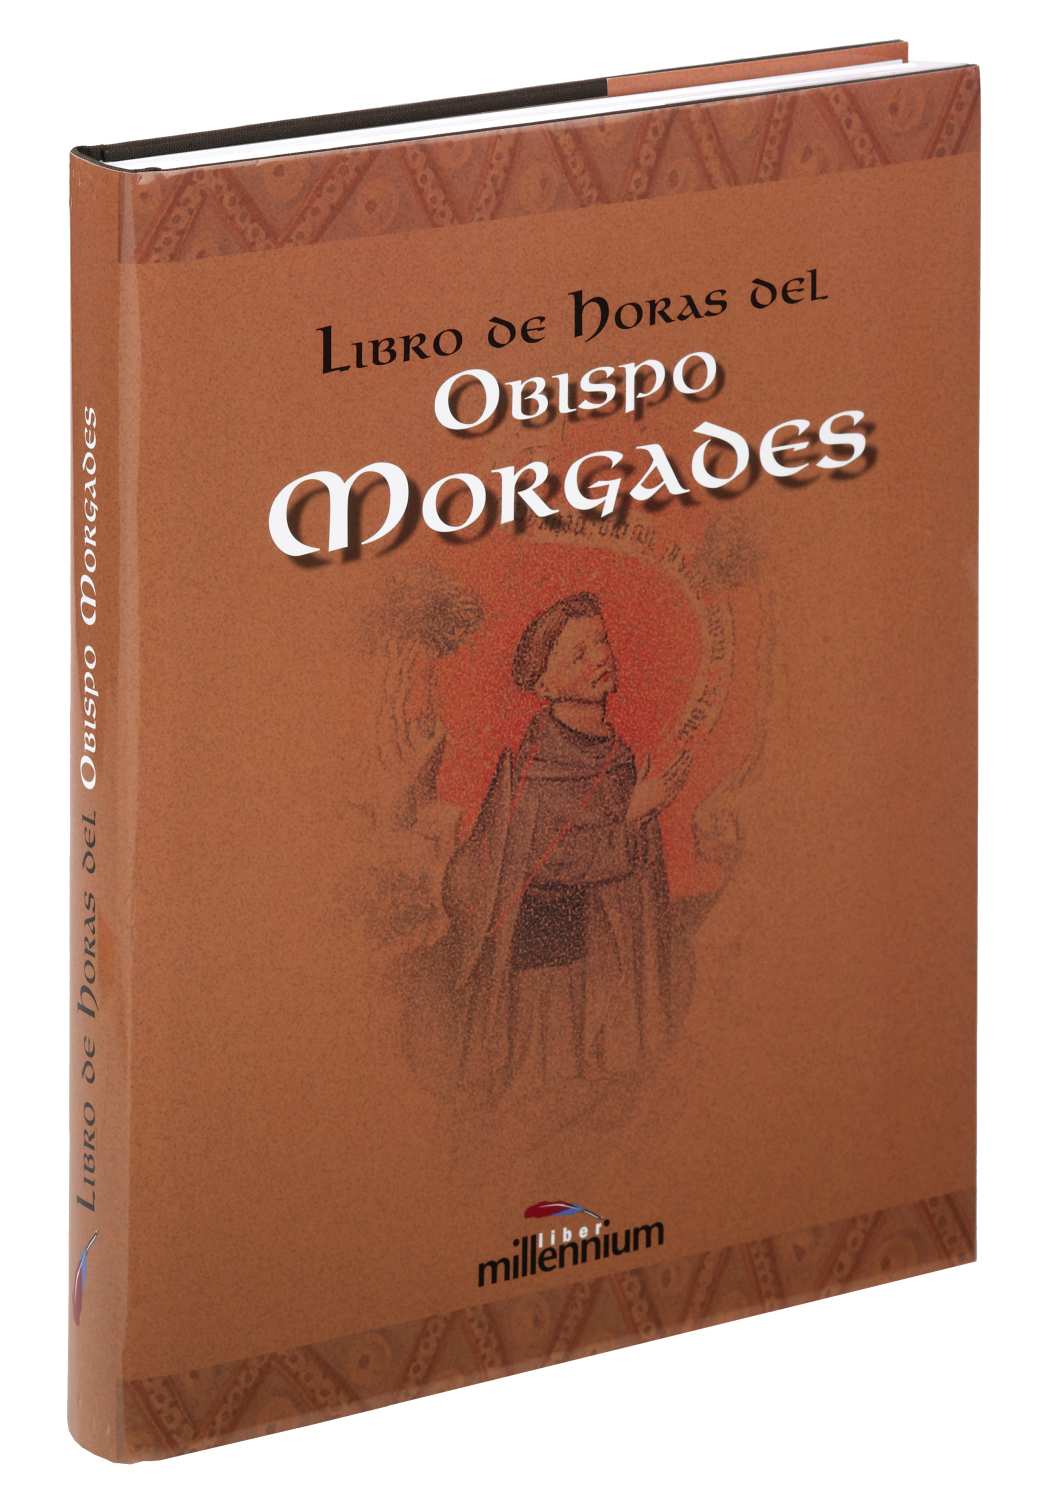 01 Obispo Morgades 1